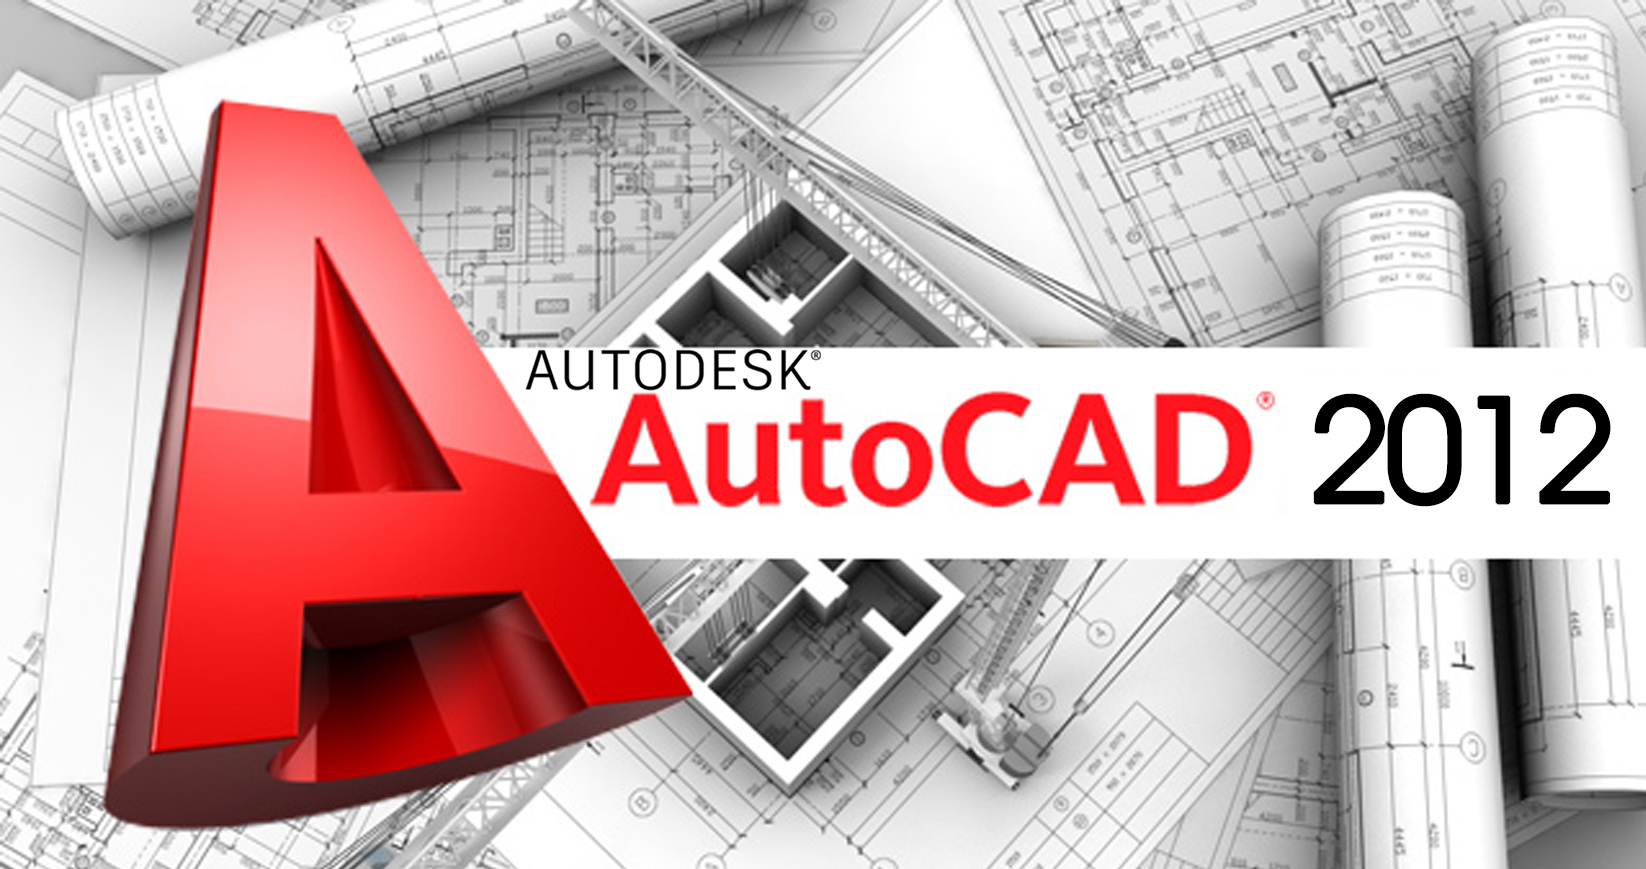 AutoCAD 2012 - Download - Hướng dẫn cài đặt nhanh nhất